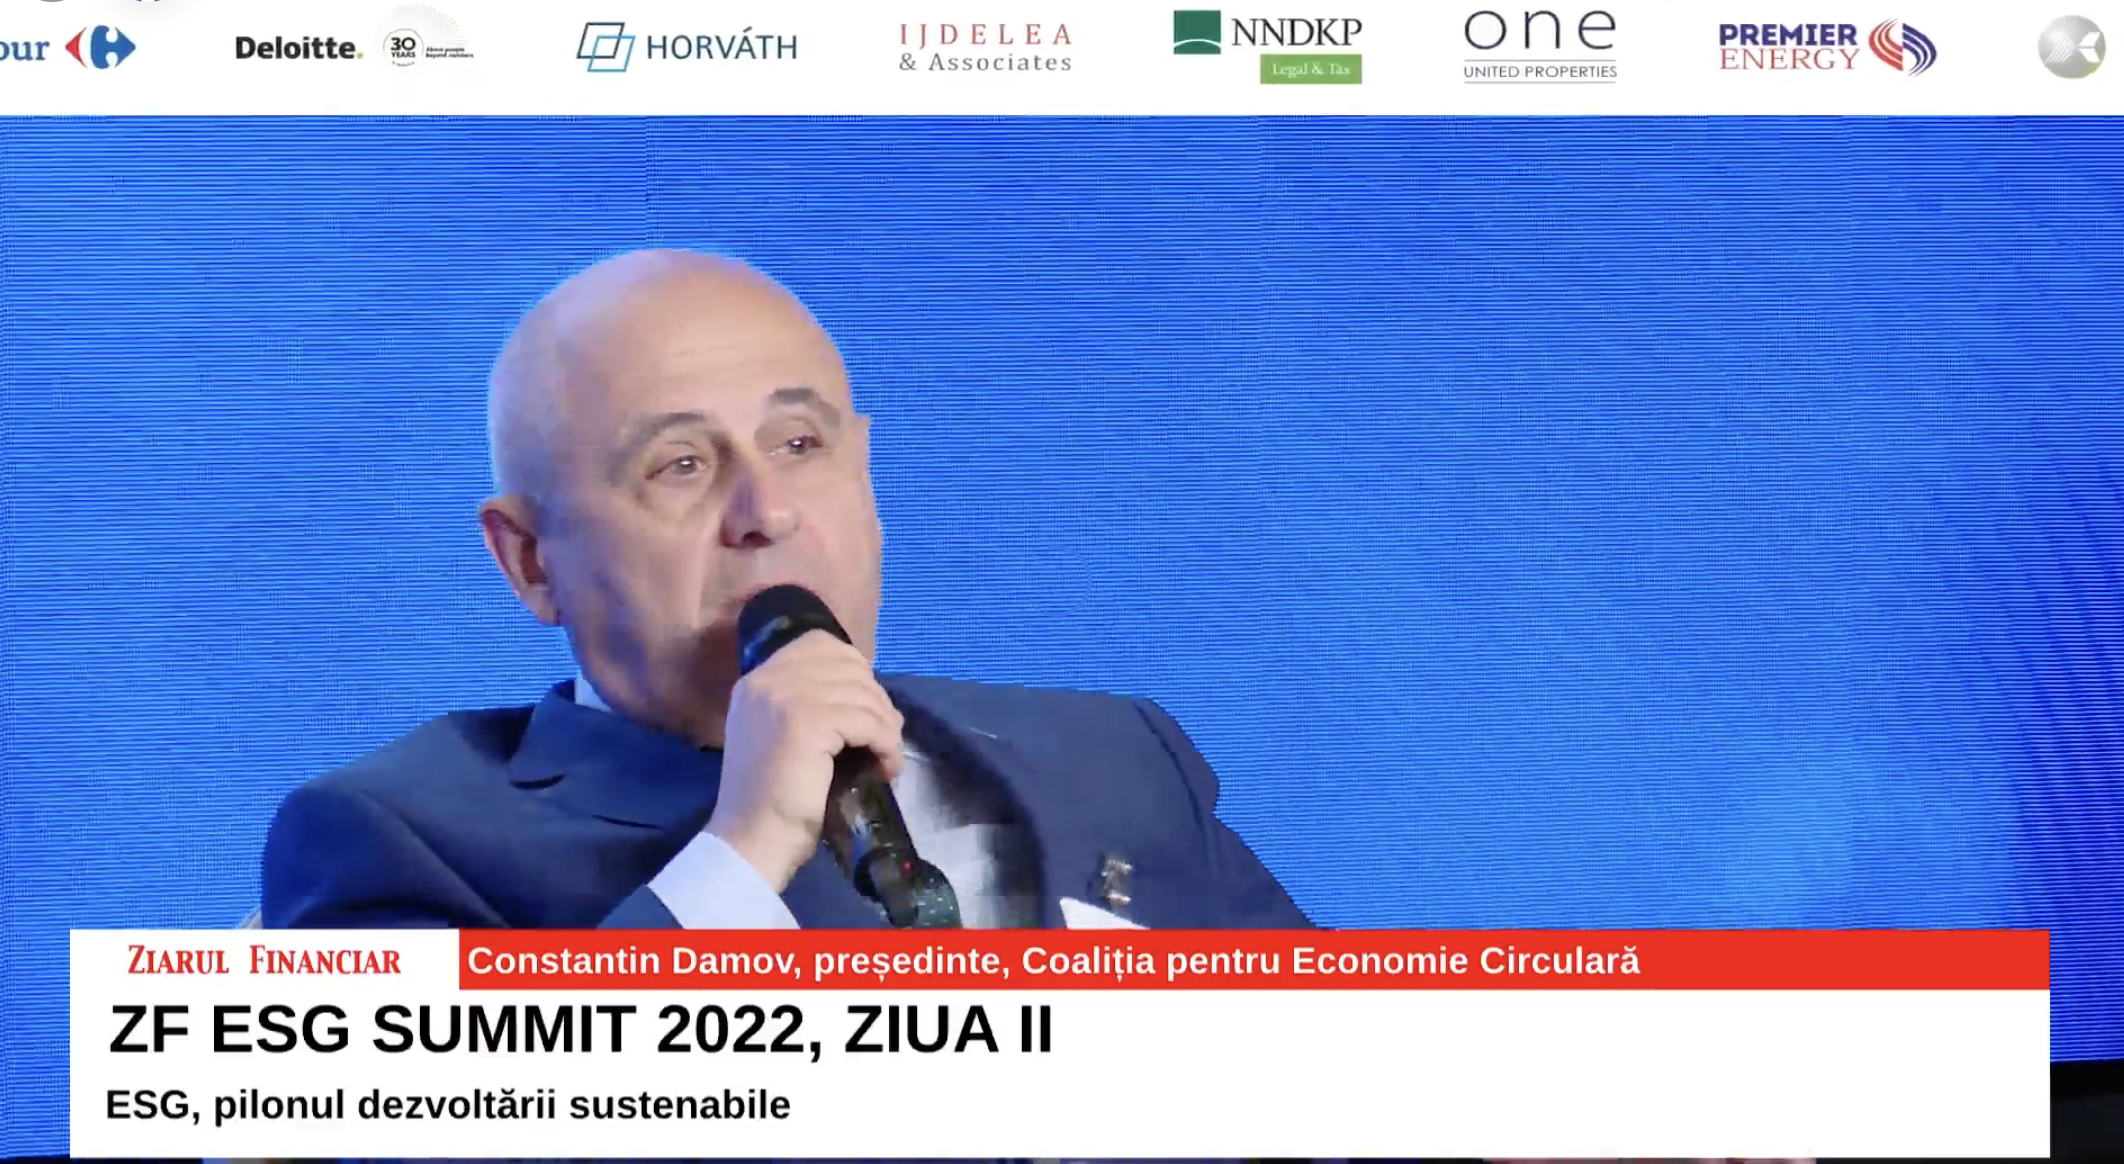 Constantin Damov, Preşedinte, Coaliţia pentru Economie Circulară: Tranziţia către ESG este un examen de sinceritate maximă al companiilor. Este ca şi cum te-ai duce să-ţi faci un set de analize